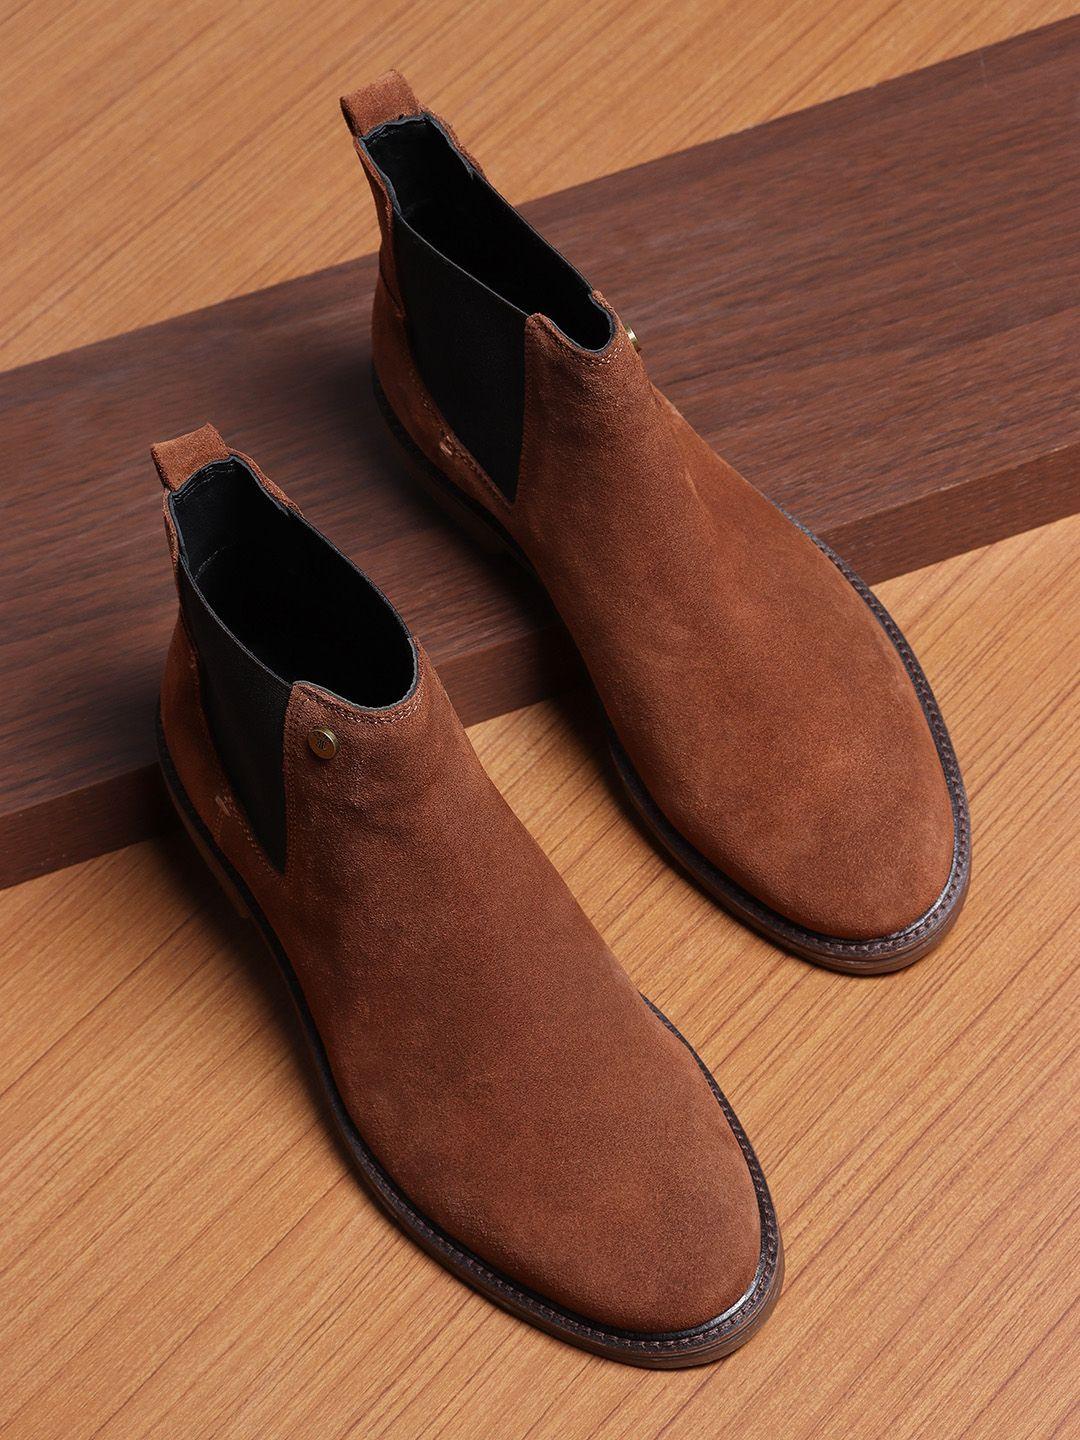 ezok men camel brown leather chelsea boots